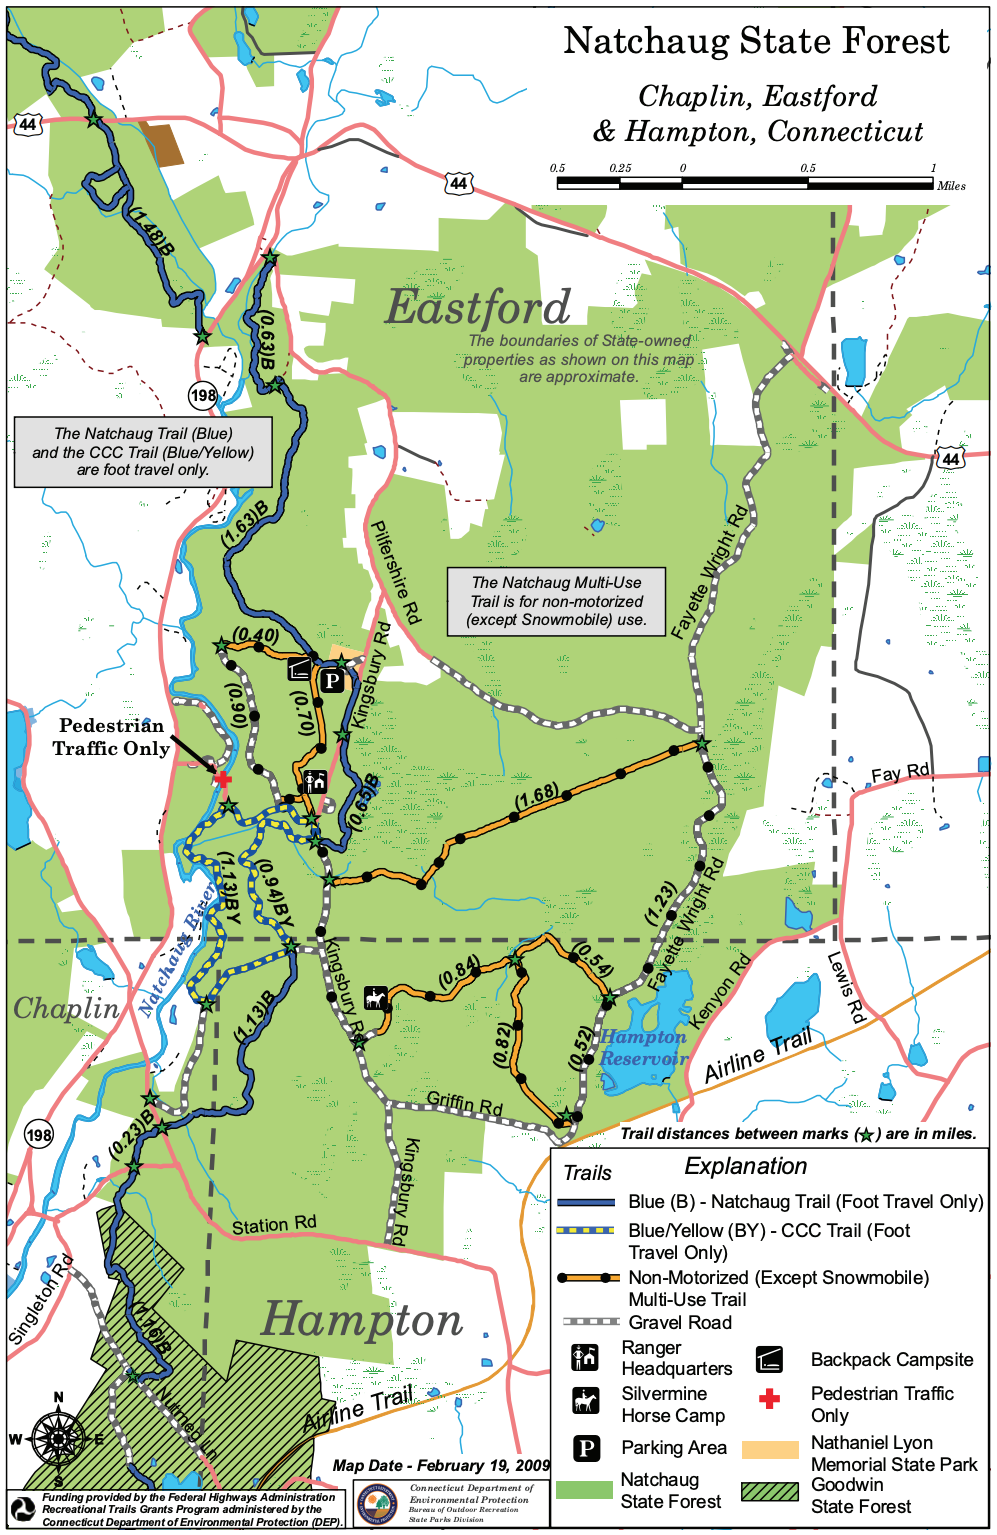 Nathaniel Lyon Memorial State Park - Explore Connecticut